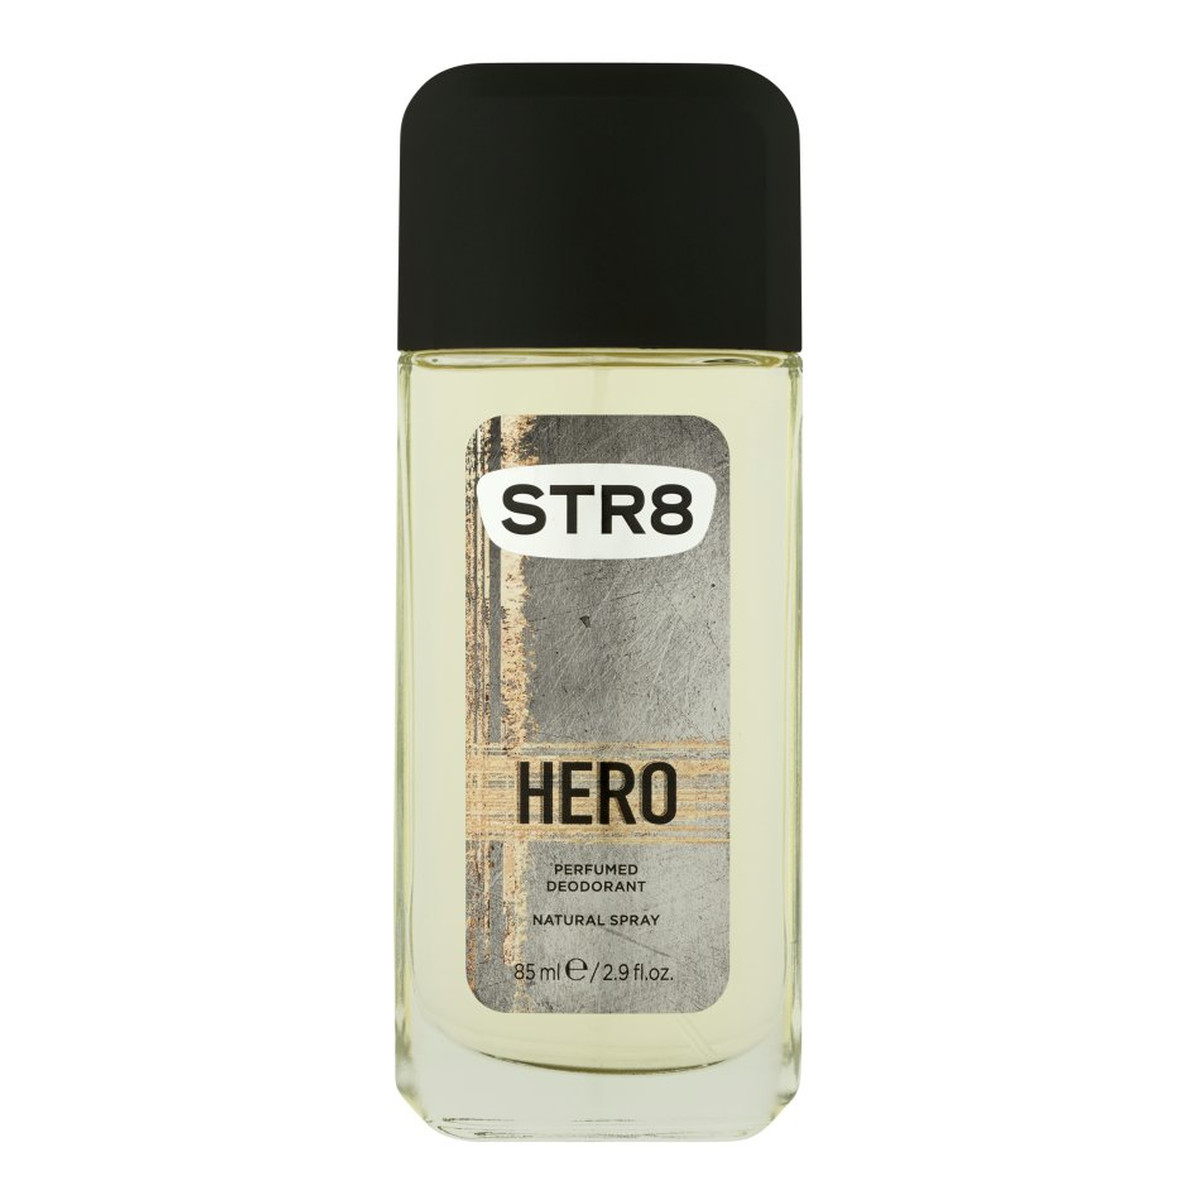 STR8 Hero Dezodorant 85ml